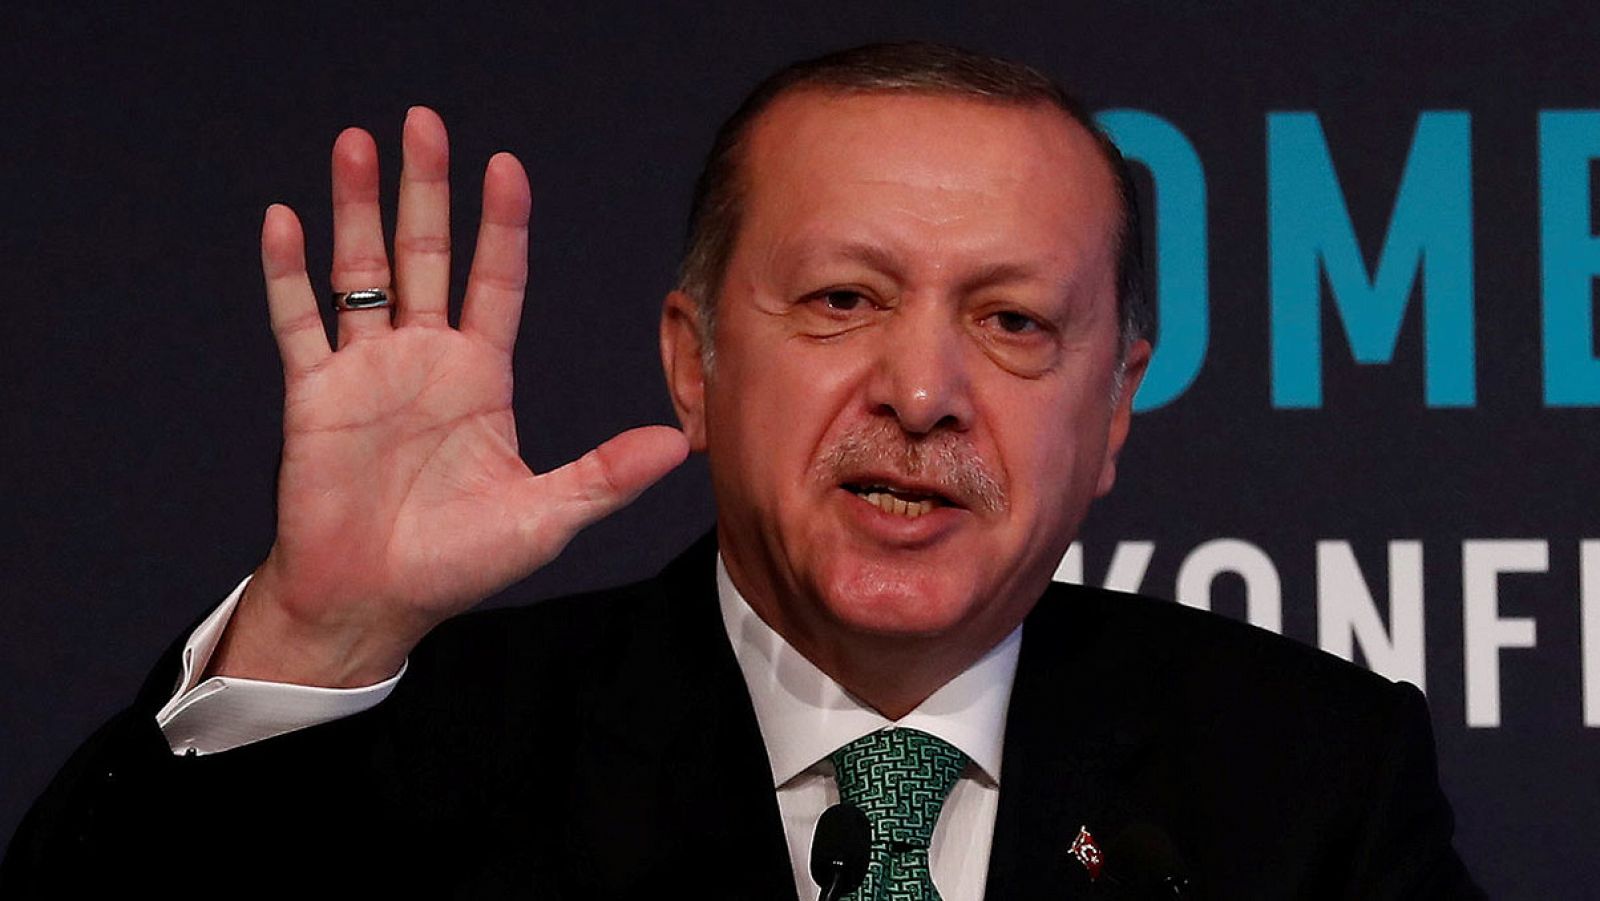 El presidente turco, Recep Tayyip Erdogan, durante una conferencia en Estambul